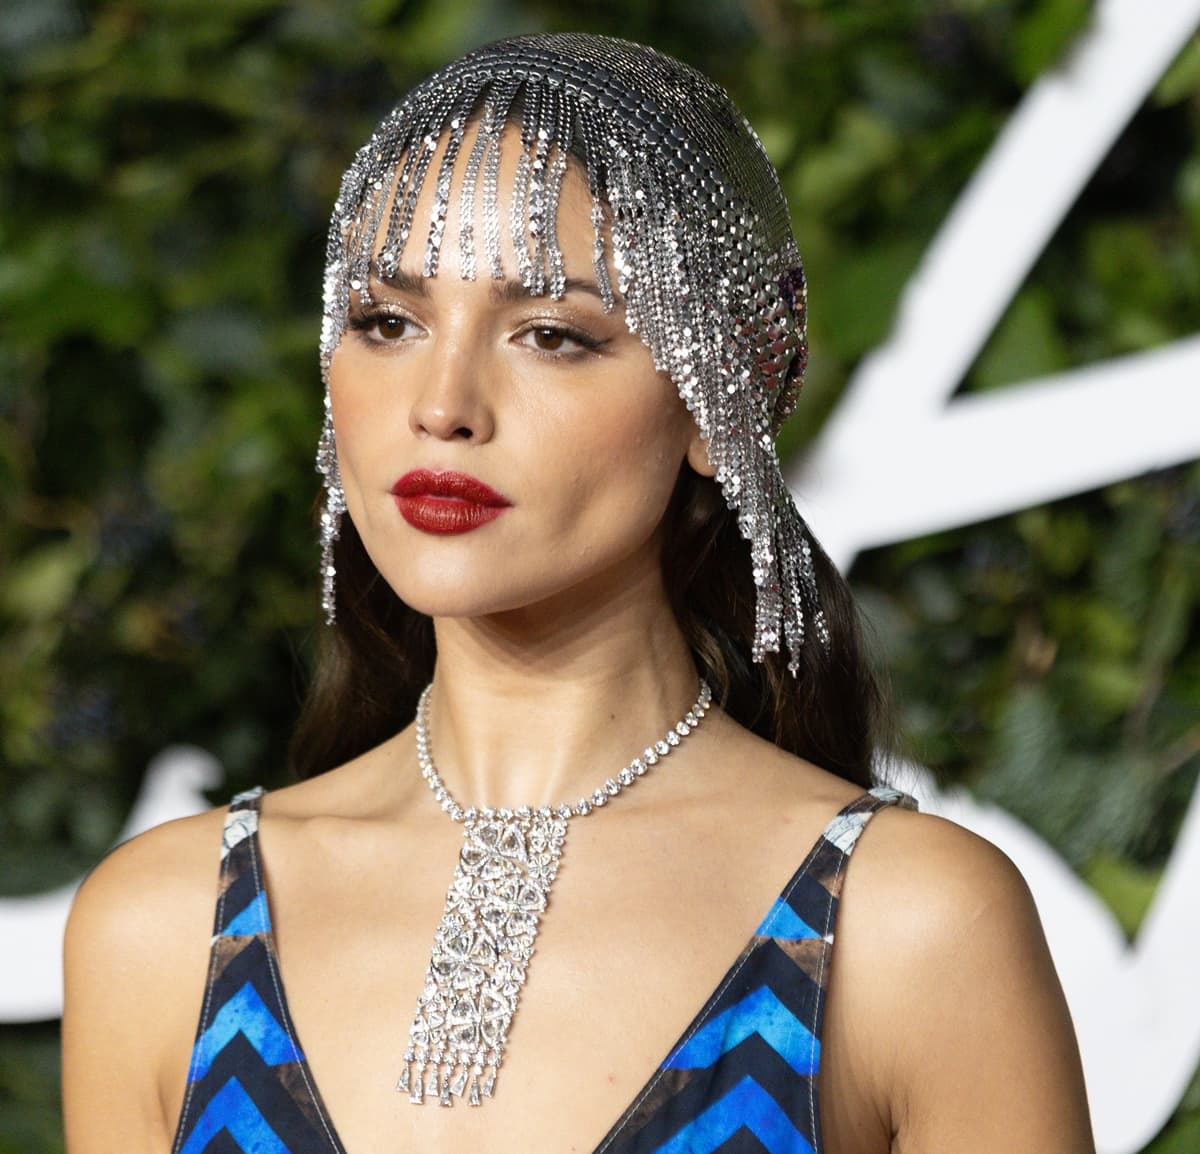 Eiza González channels Cleopatra with a glittering Paco Rabanne diamond headpiece